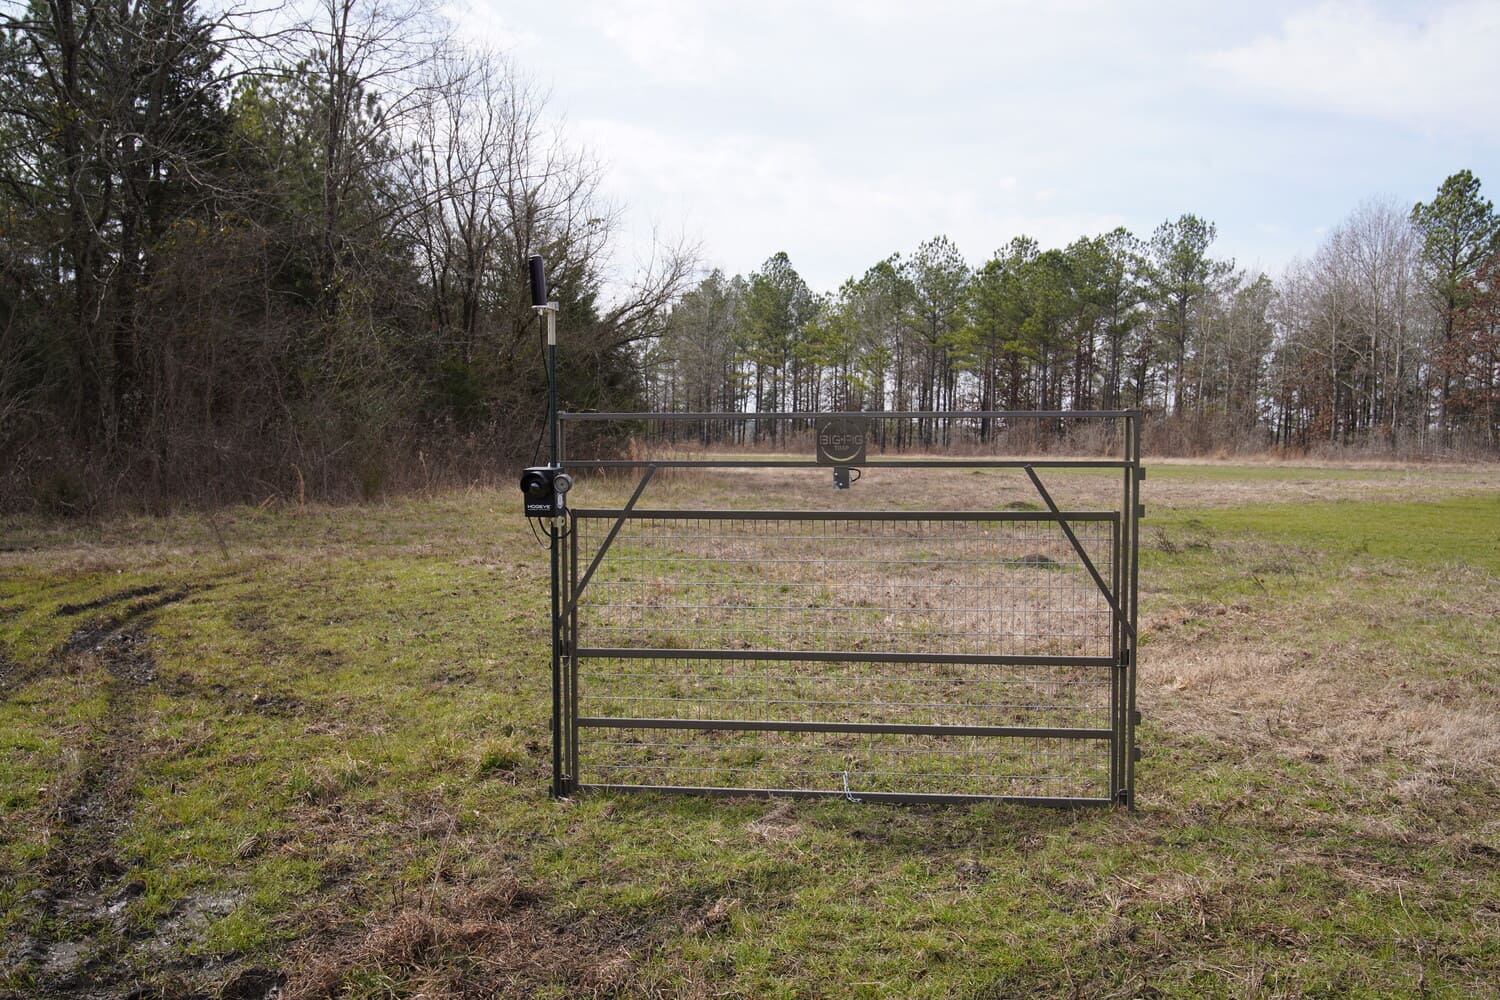 feral hog guillotine gate in field